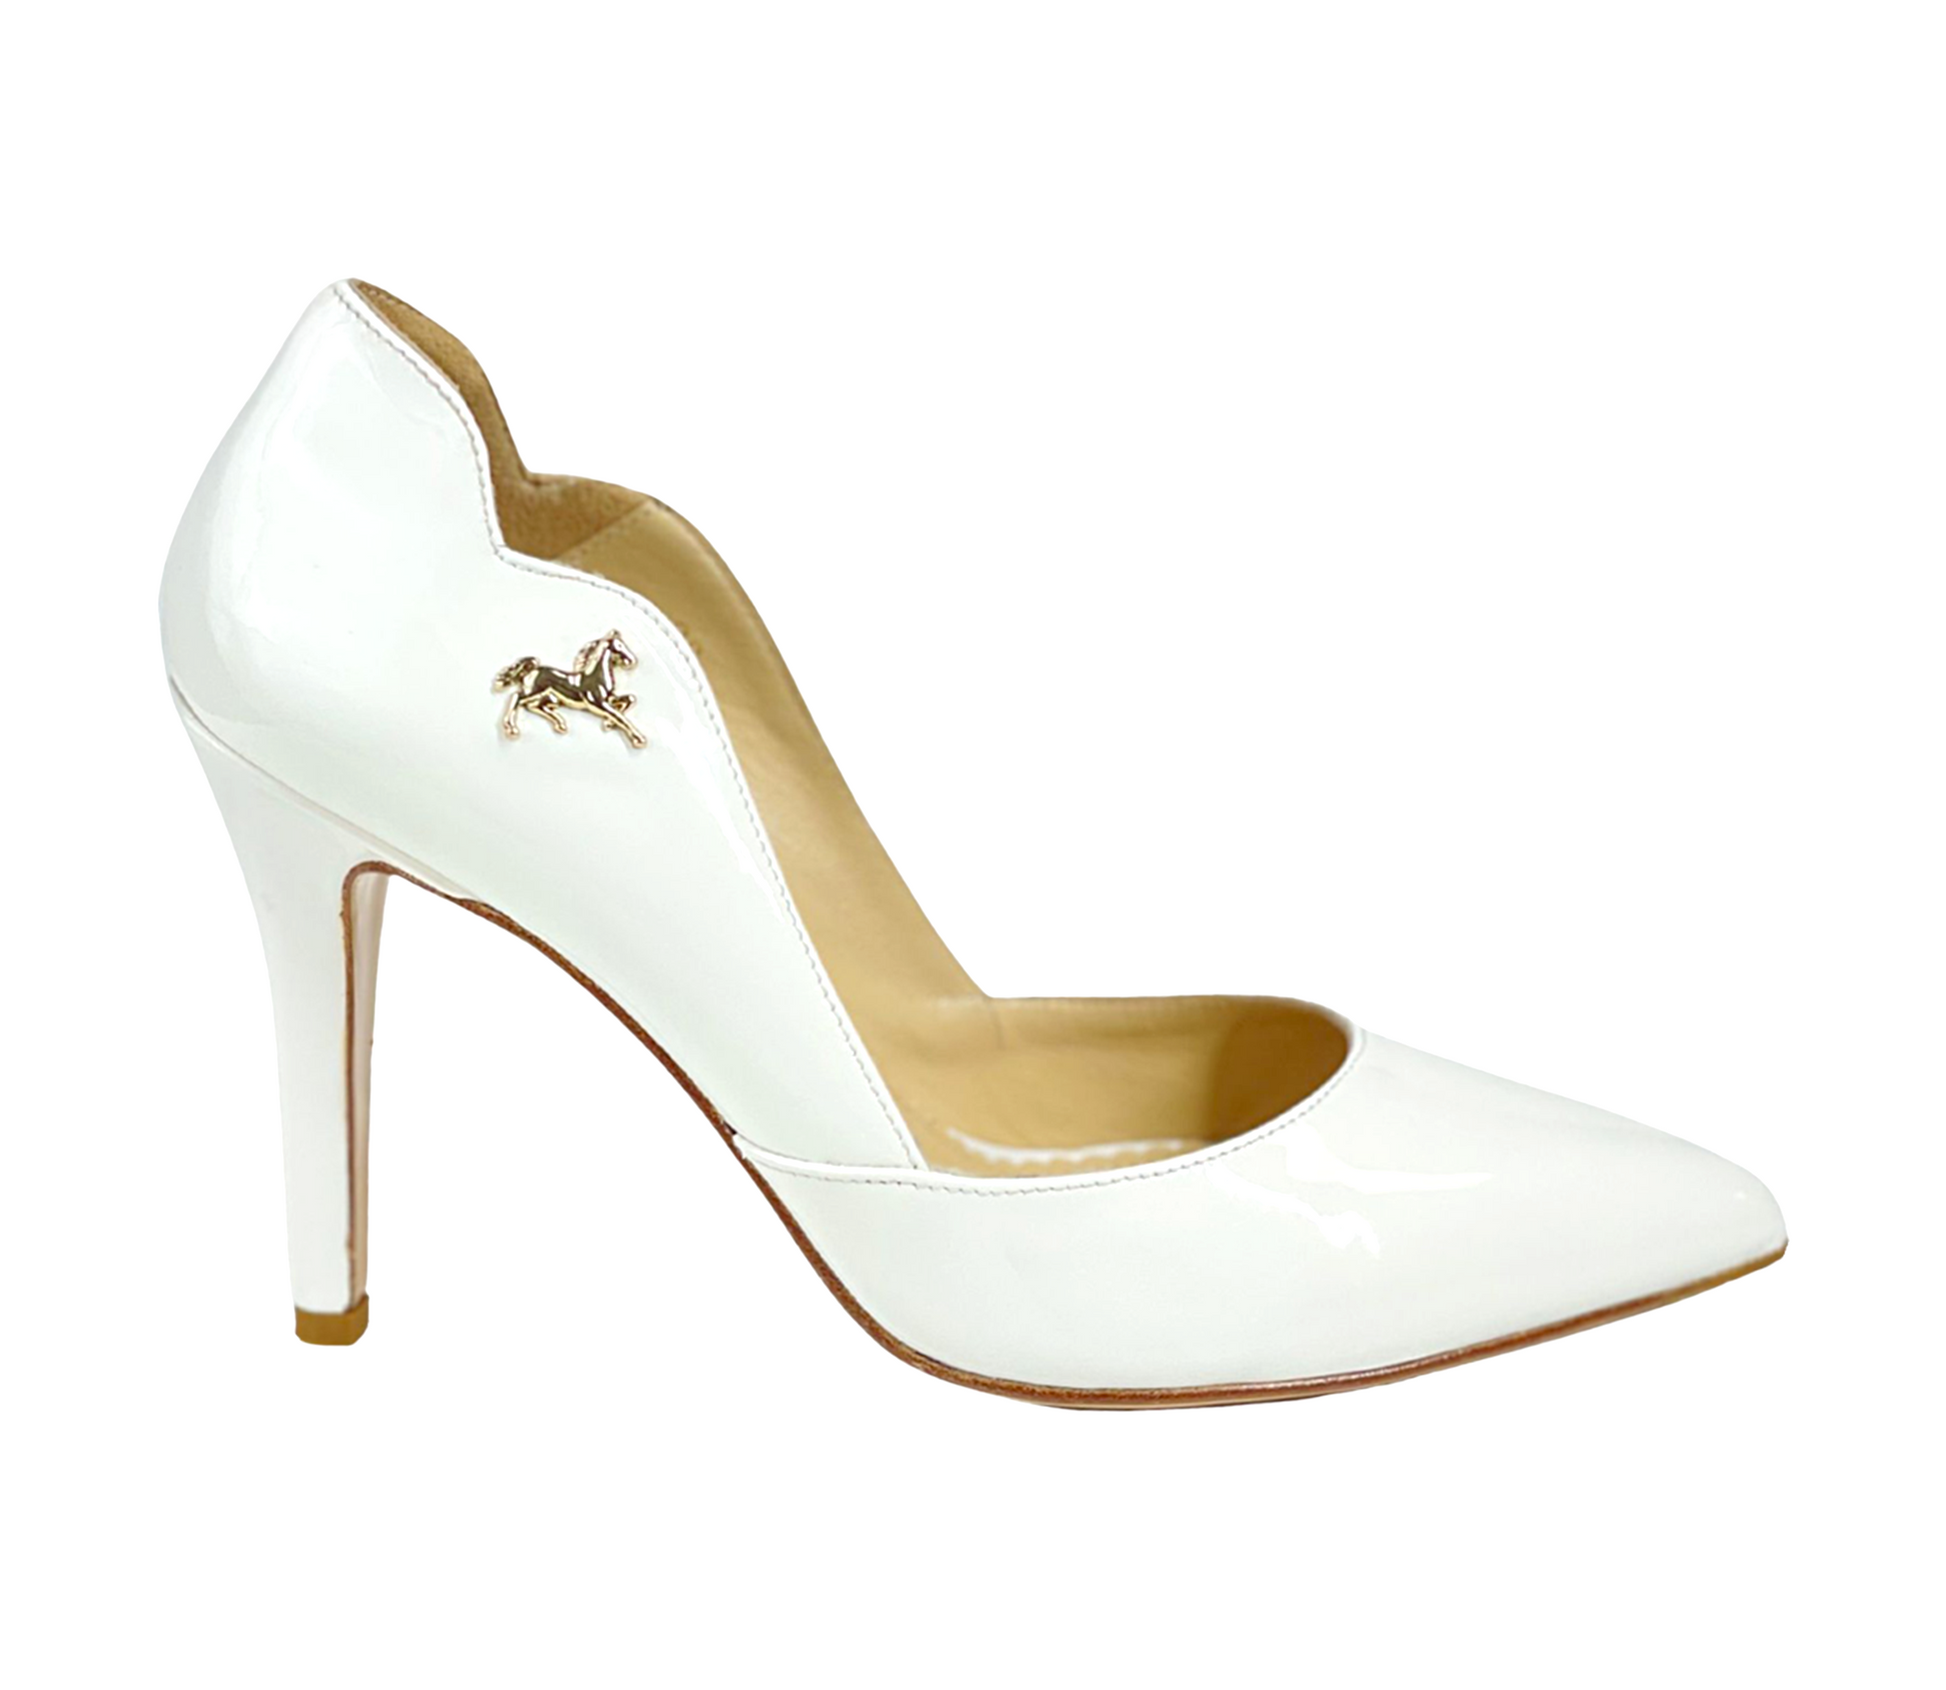 Cavalinho Classic High Heel Pump - White - 48100514.06_Cavalinho_White_Shoe-1